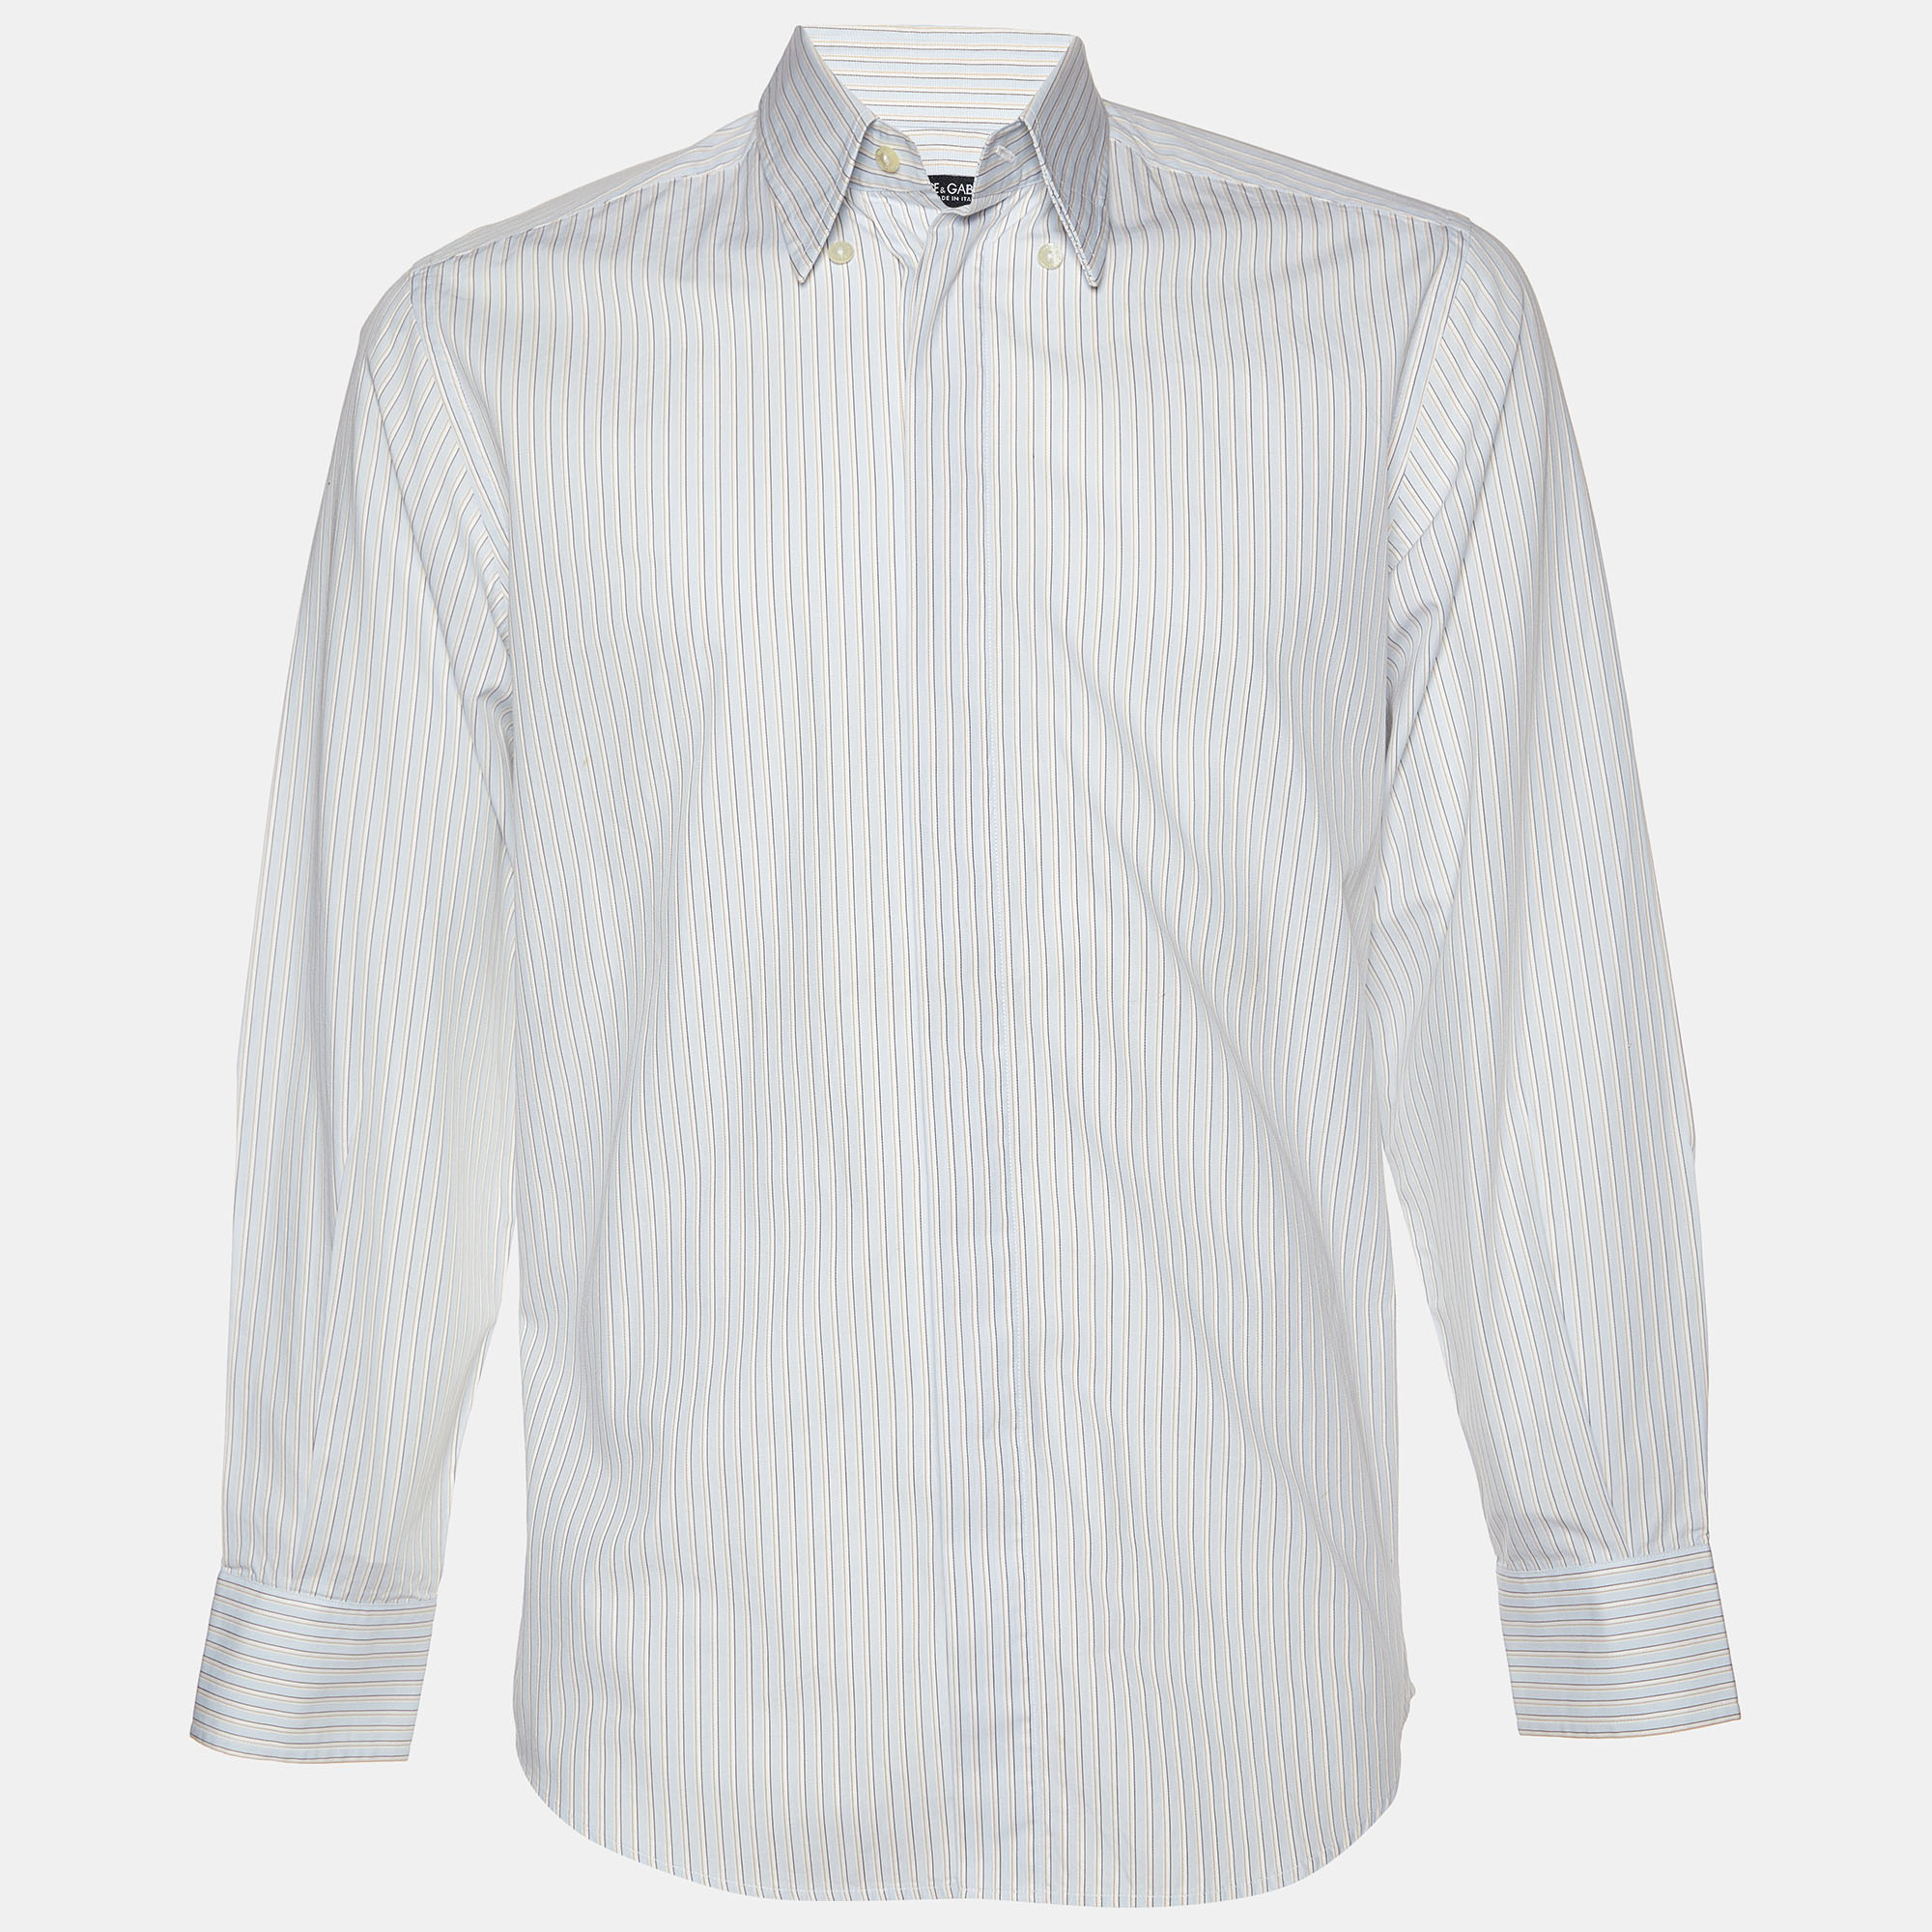 Dolce & gabbana light blue pinstripe cotton shirt m